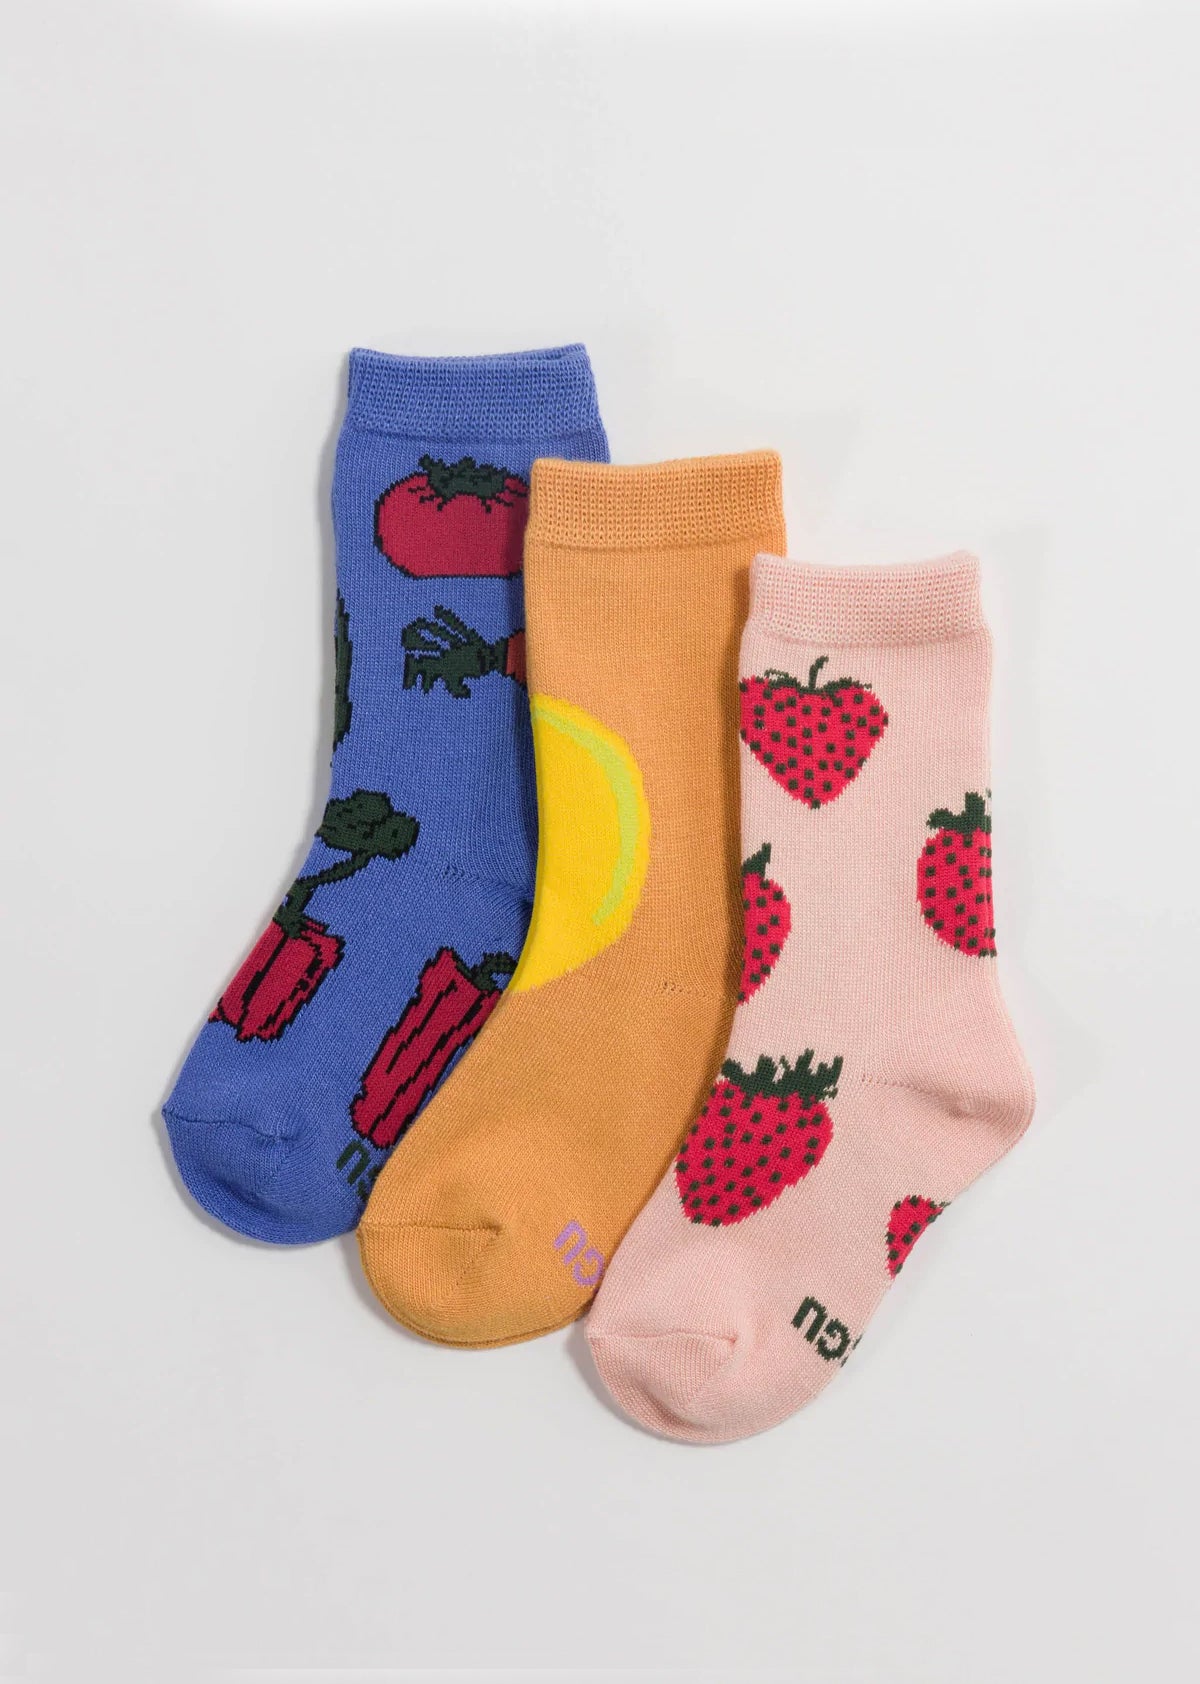 Baggu - Kids Crew Sock Set of 3 - Fruits & Veggies